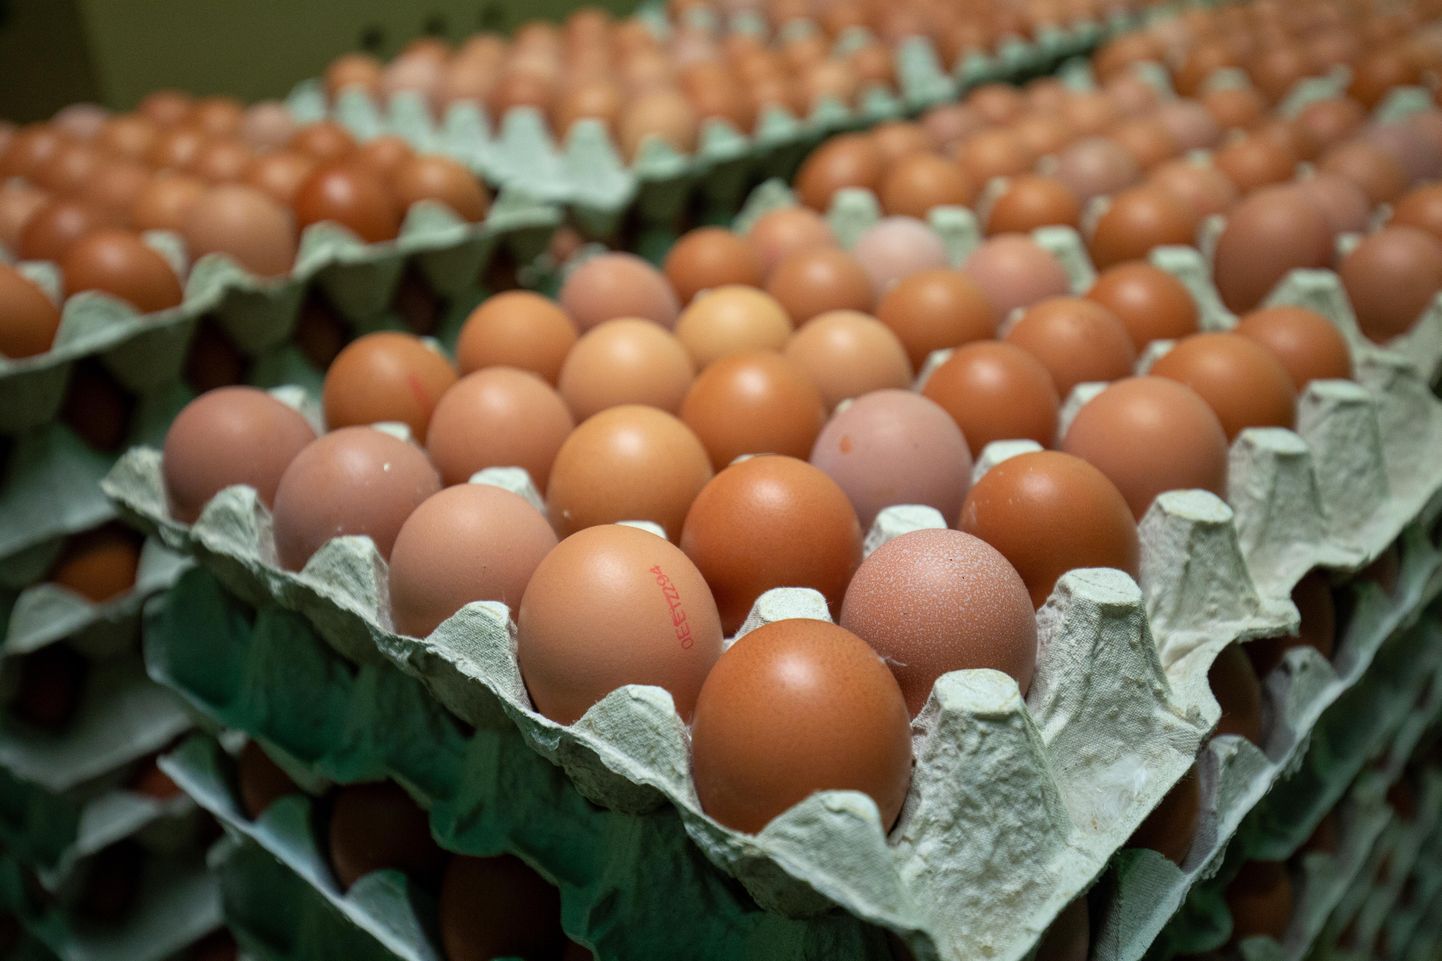 Iga müüdud munaaluse kohta annetab Briti tootja karbi muna toidupangale.